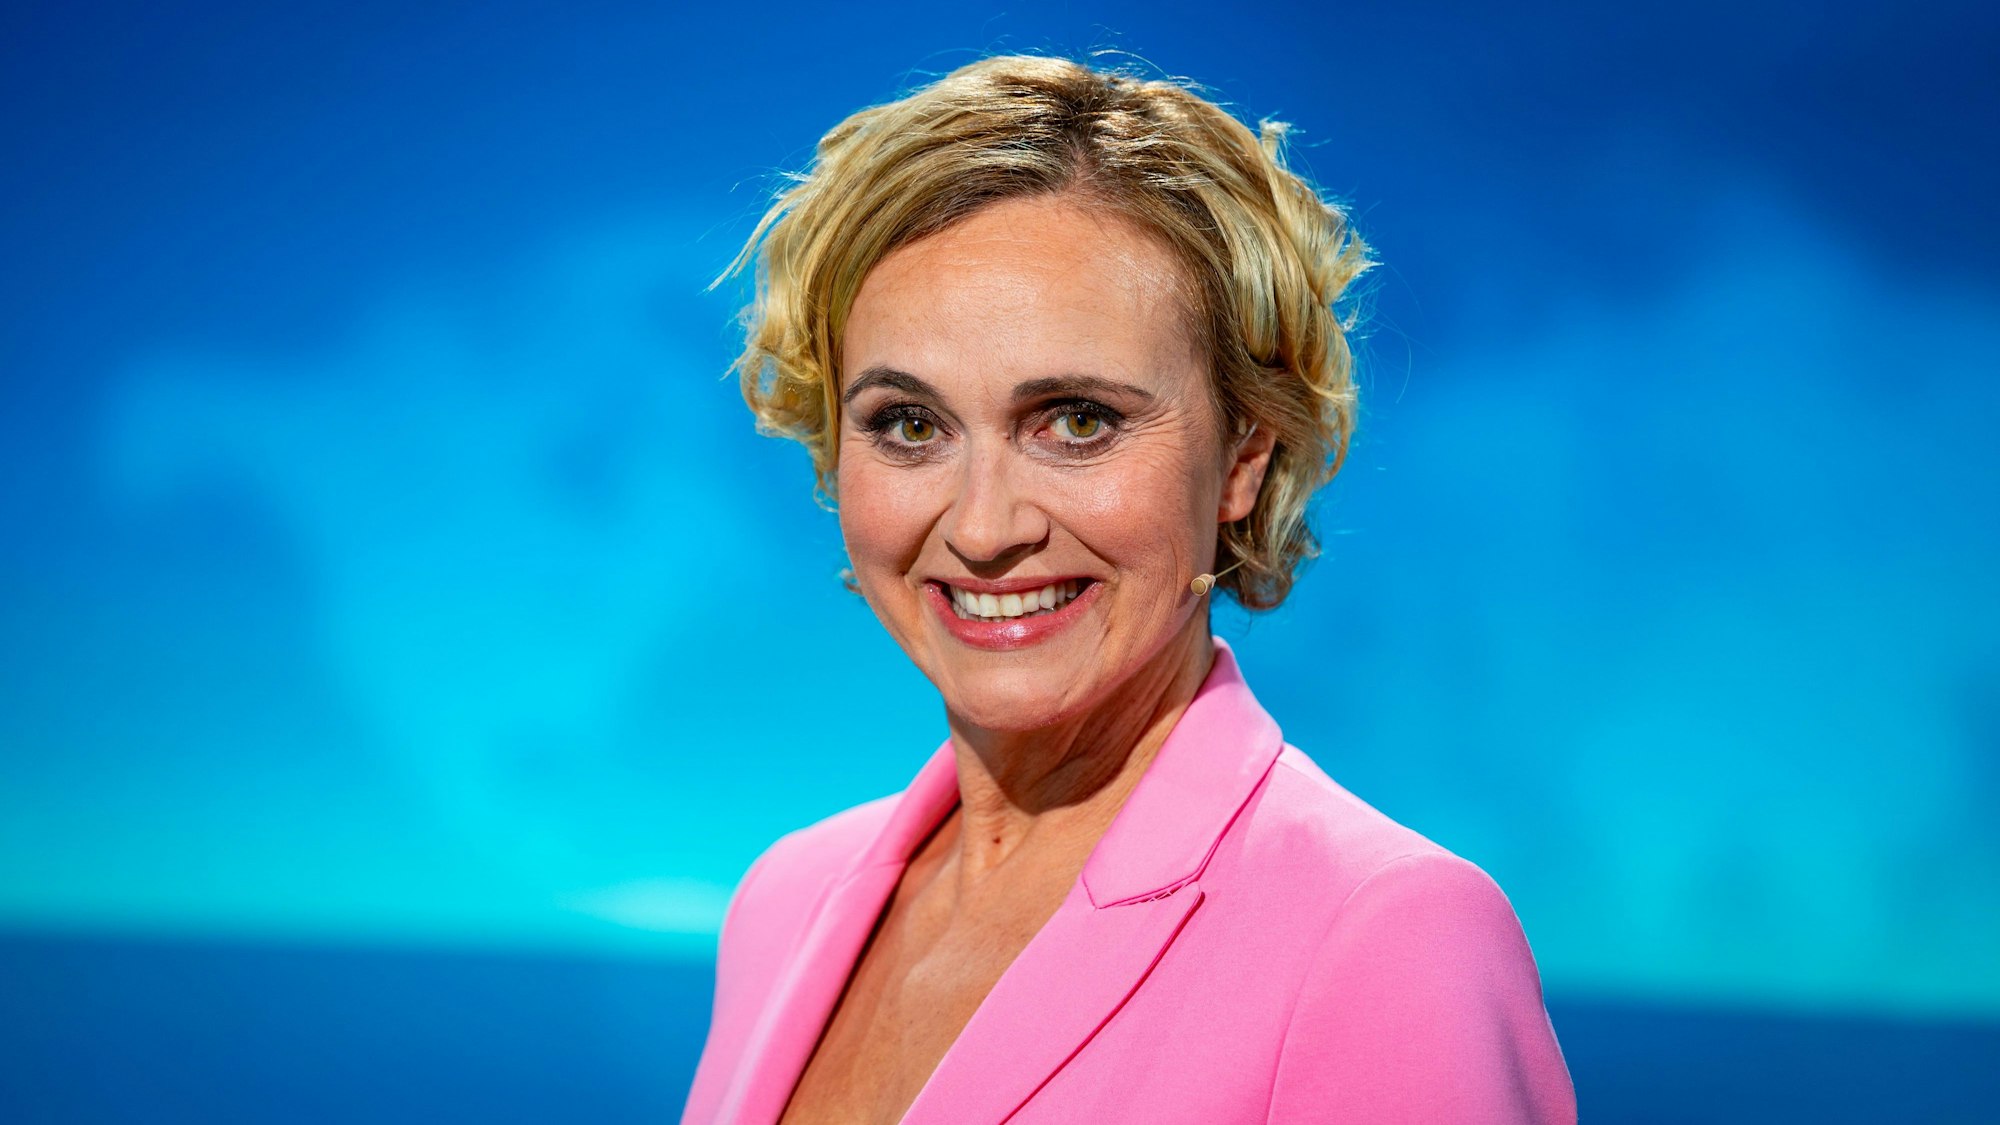 Die Moderatorin Caren Miosga übernimmt den Talkshow-Sendeplatz von Anne Will. Am 21. Januar soll ihre neue Sendung erstmals laufen. (Archivbild)